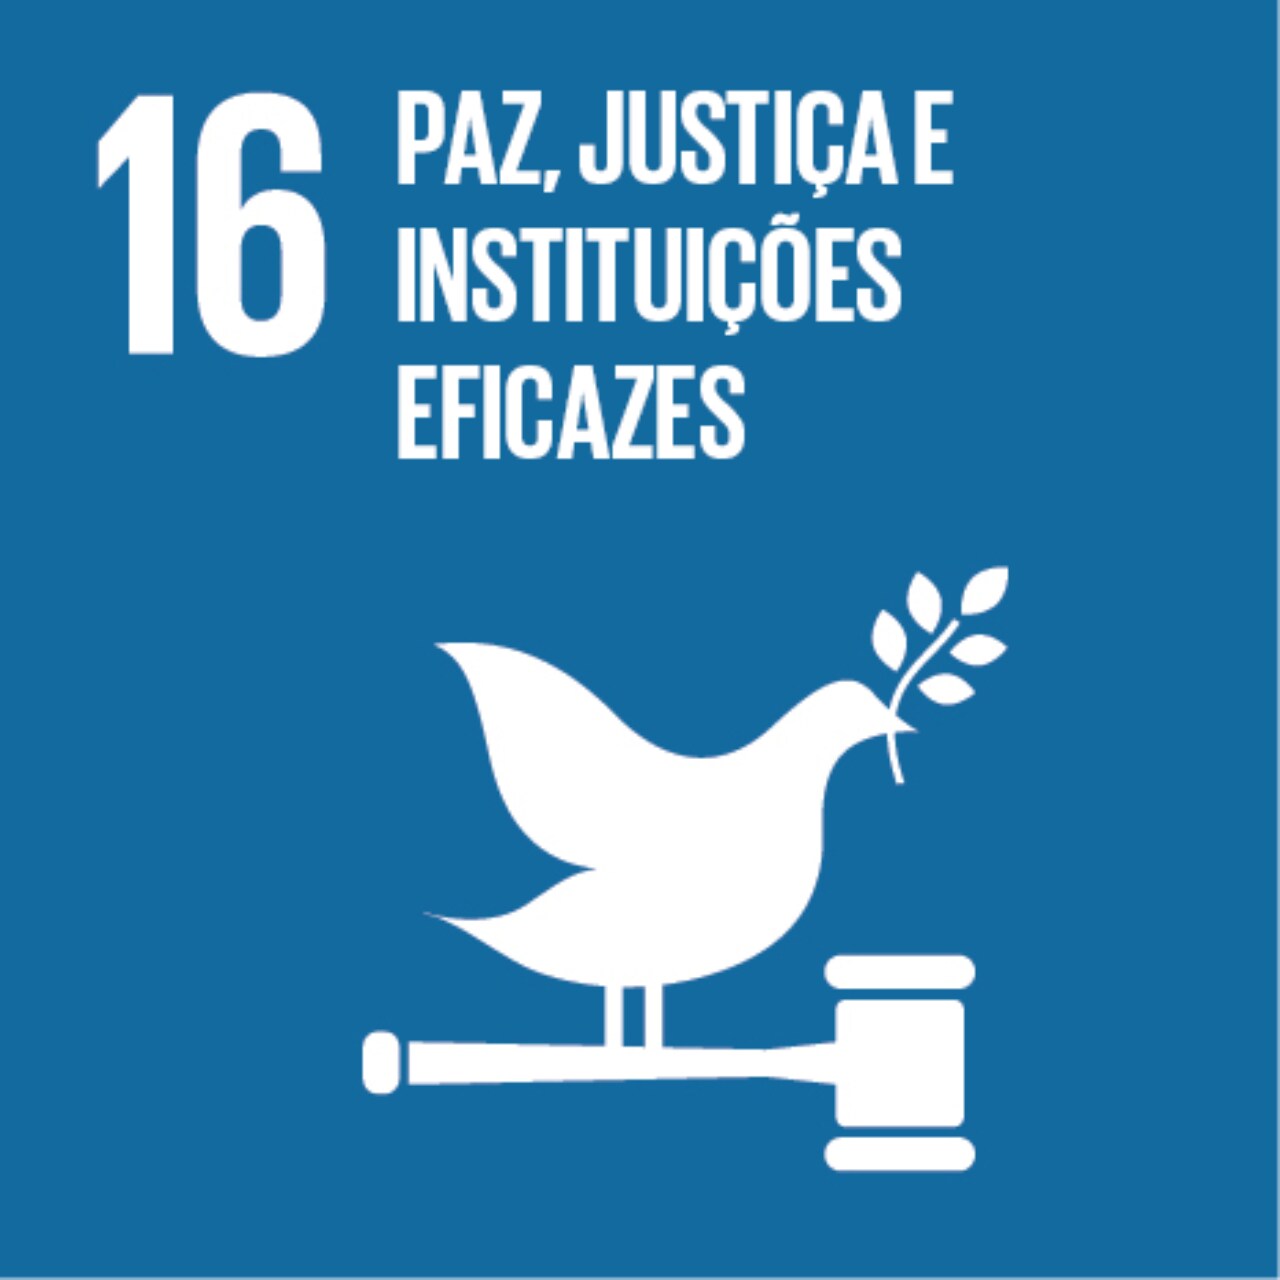 Imagem que representa o ODS número Dezesseis – Paz, justiça e instituições eficazes, com fundo azul e os ícones de uma pomba da paz e um martelo da justiça.